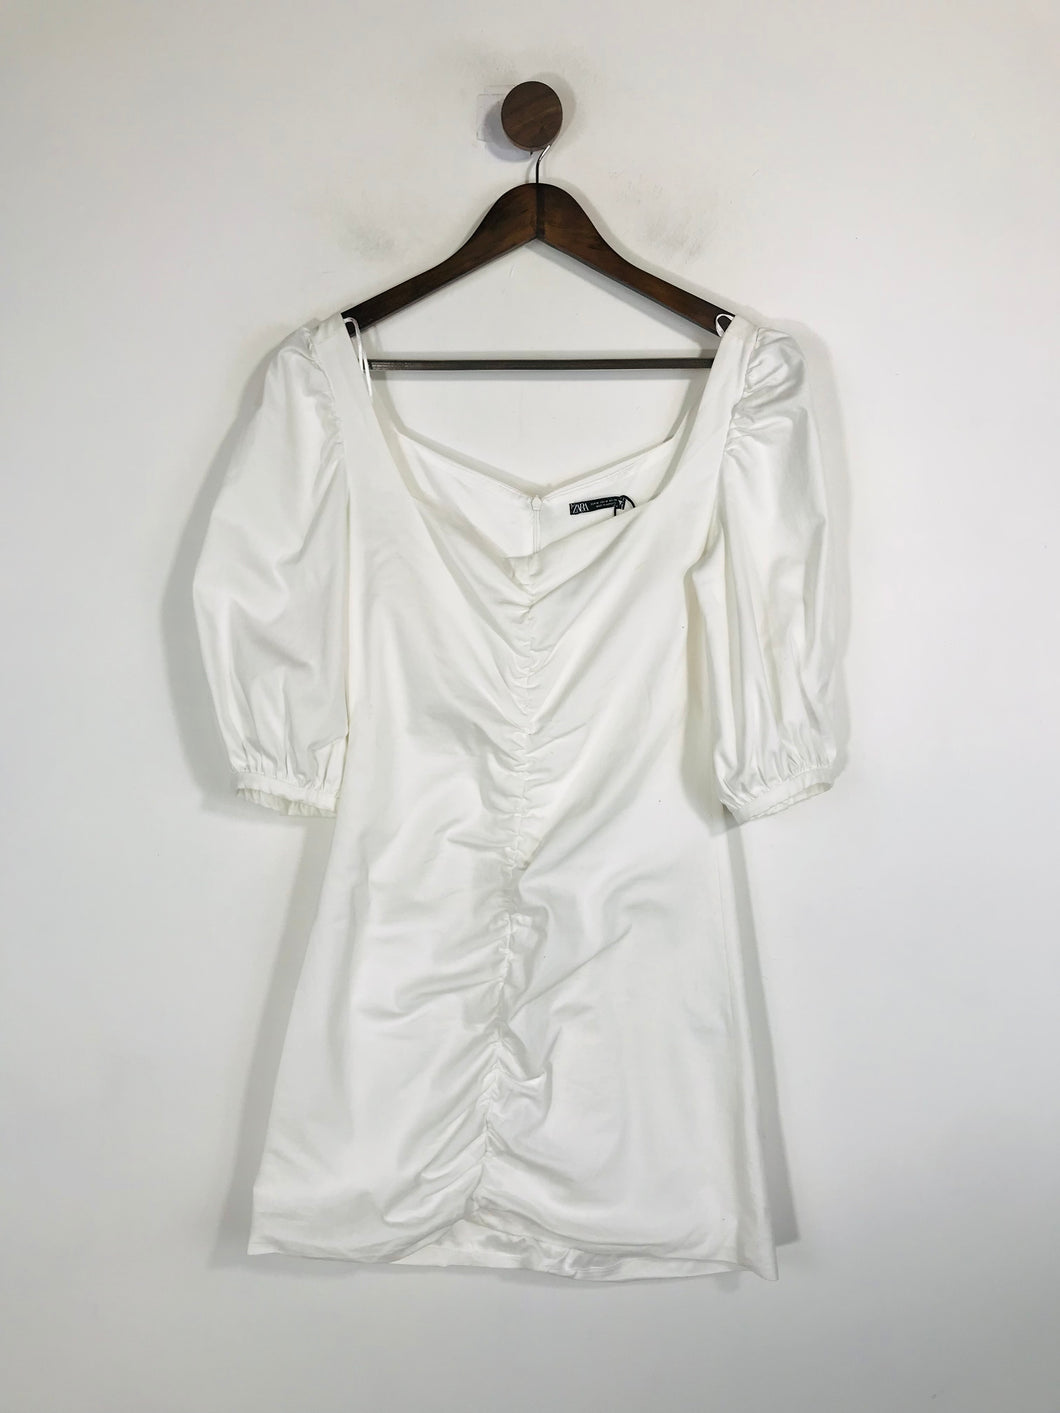 Zara Women's Ruched Mini Dress | M UK10-12 | White